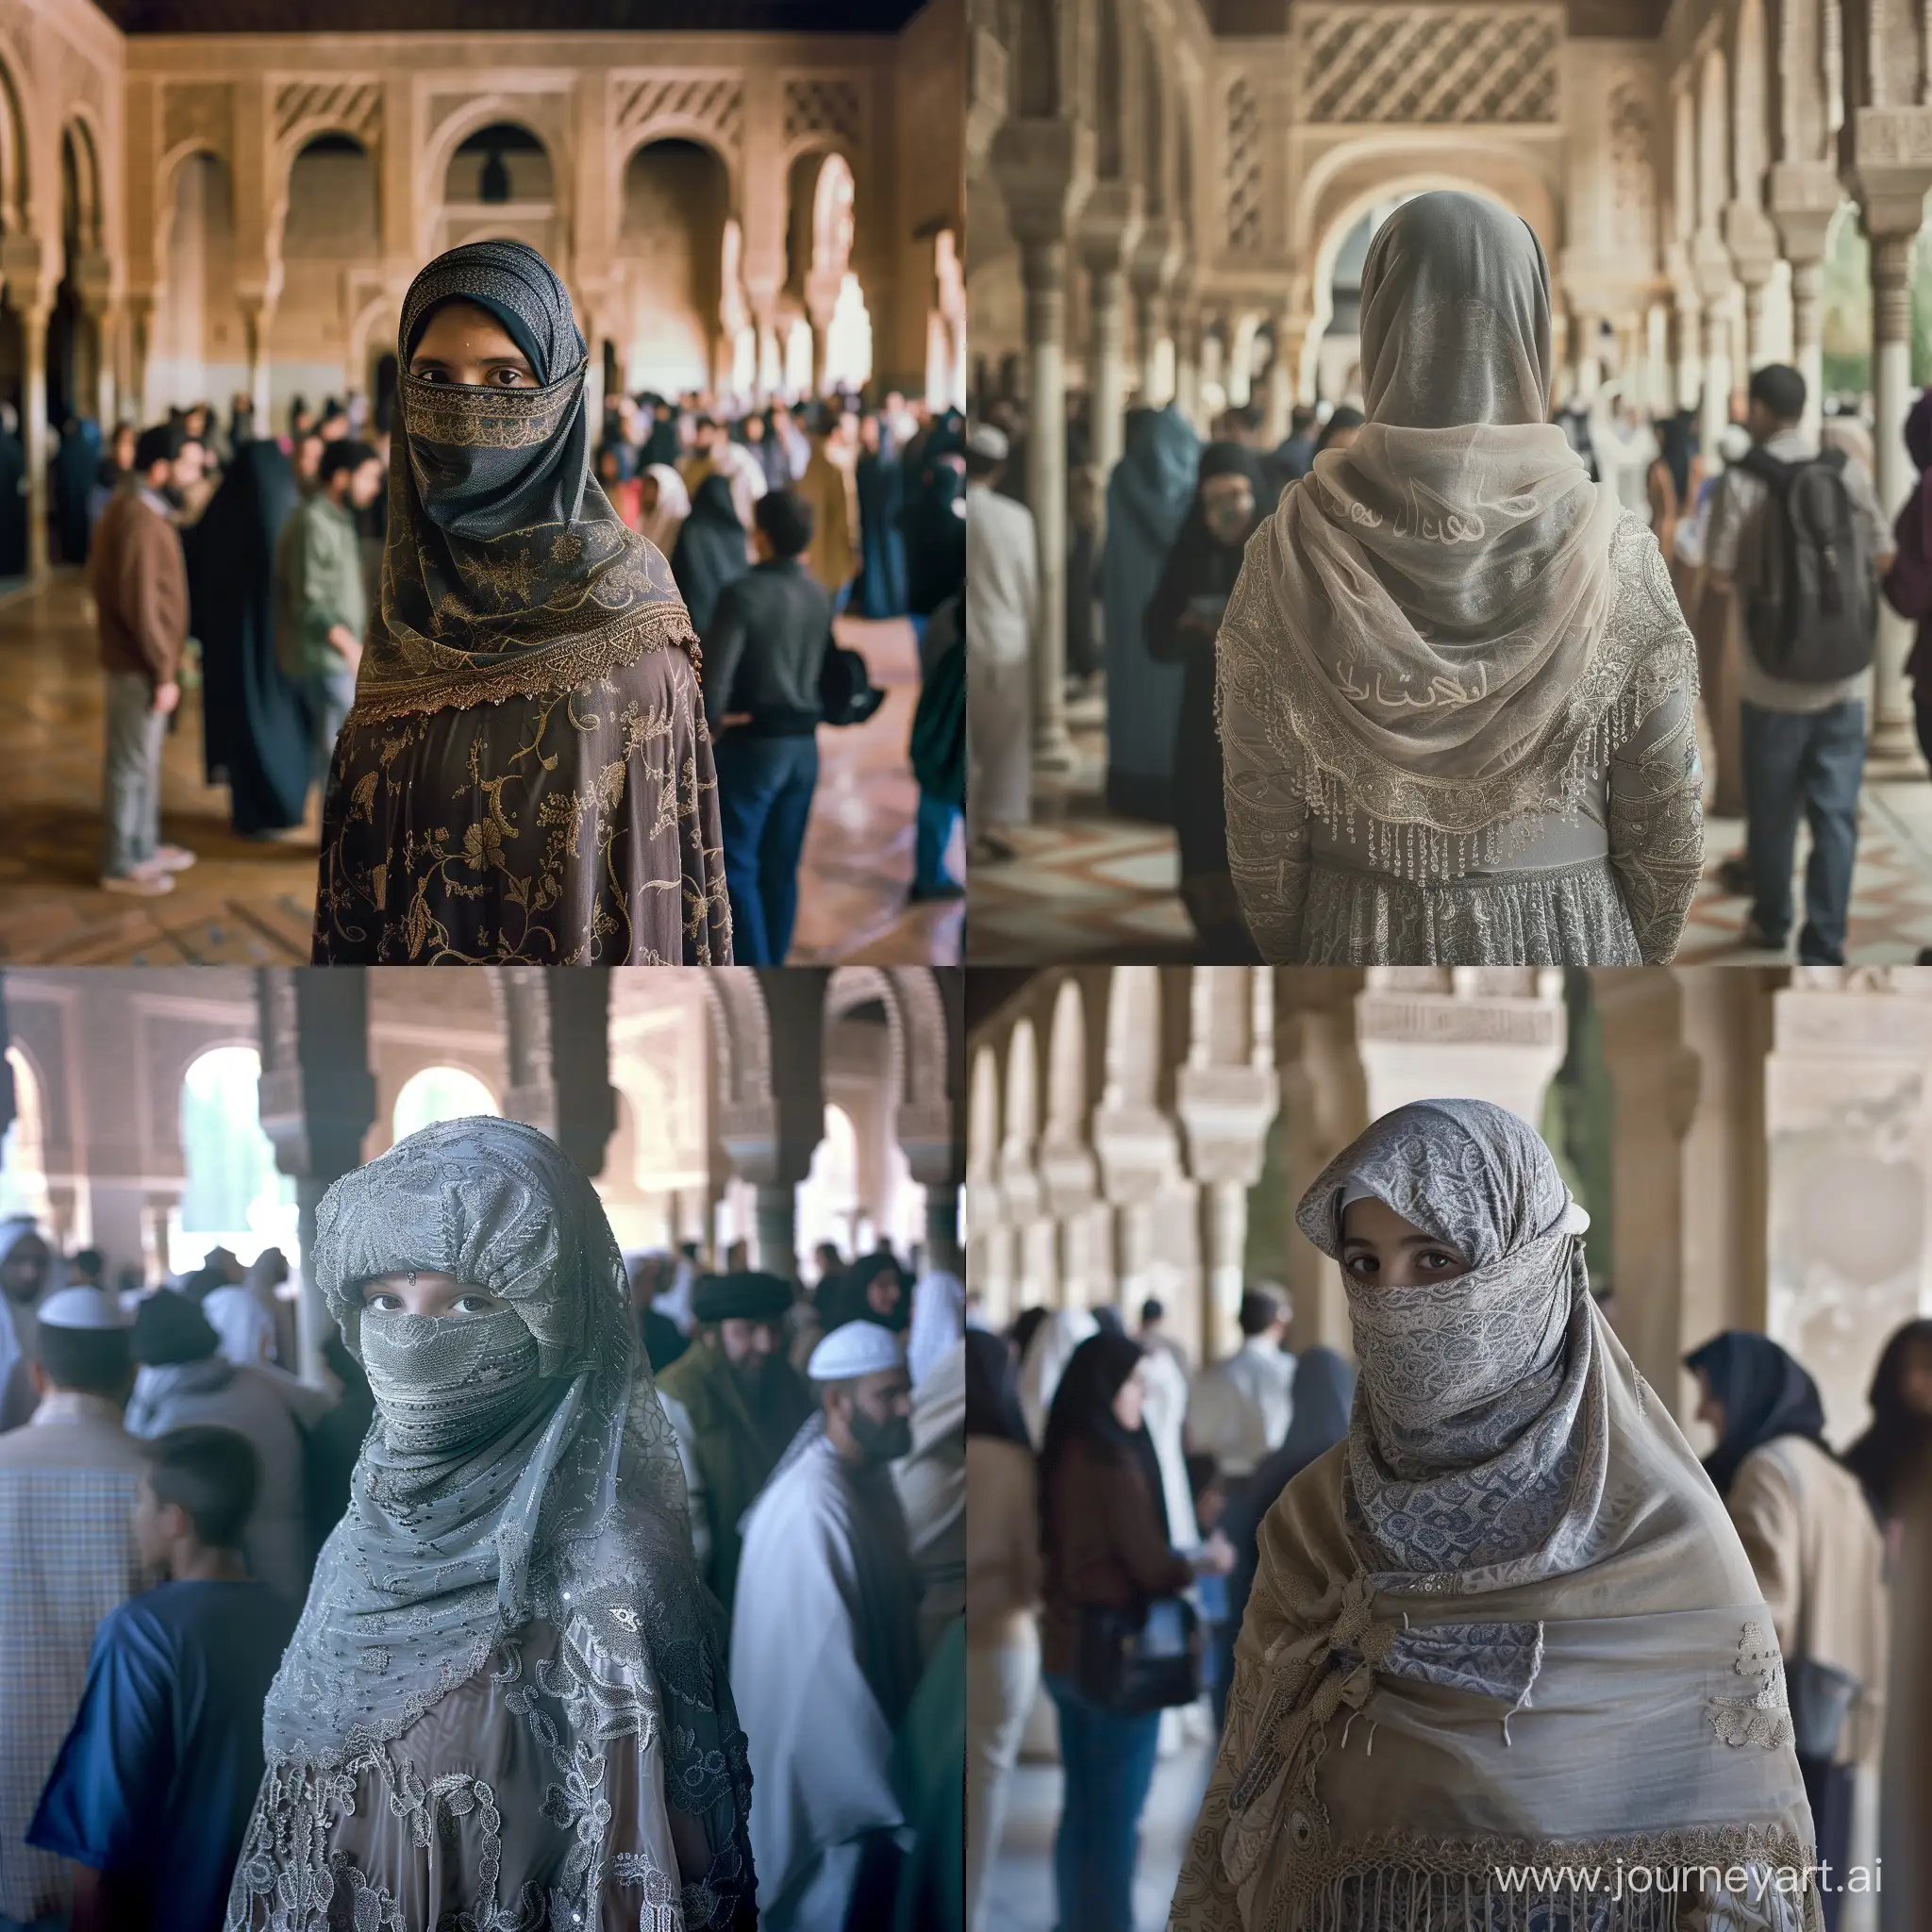 فتاة سعودية، محجبة بملامح عربية، تقف بين حشود من الناس في قصر الحمراء بأسبانيا